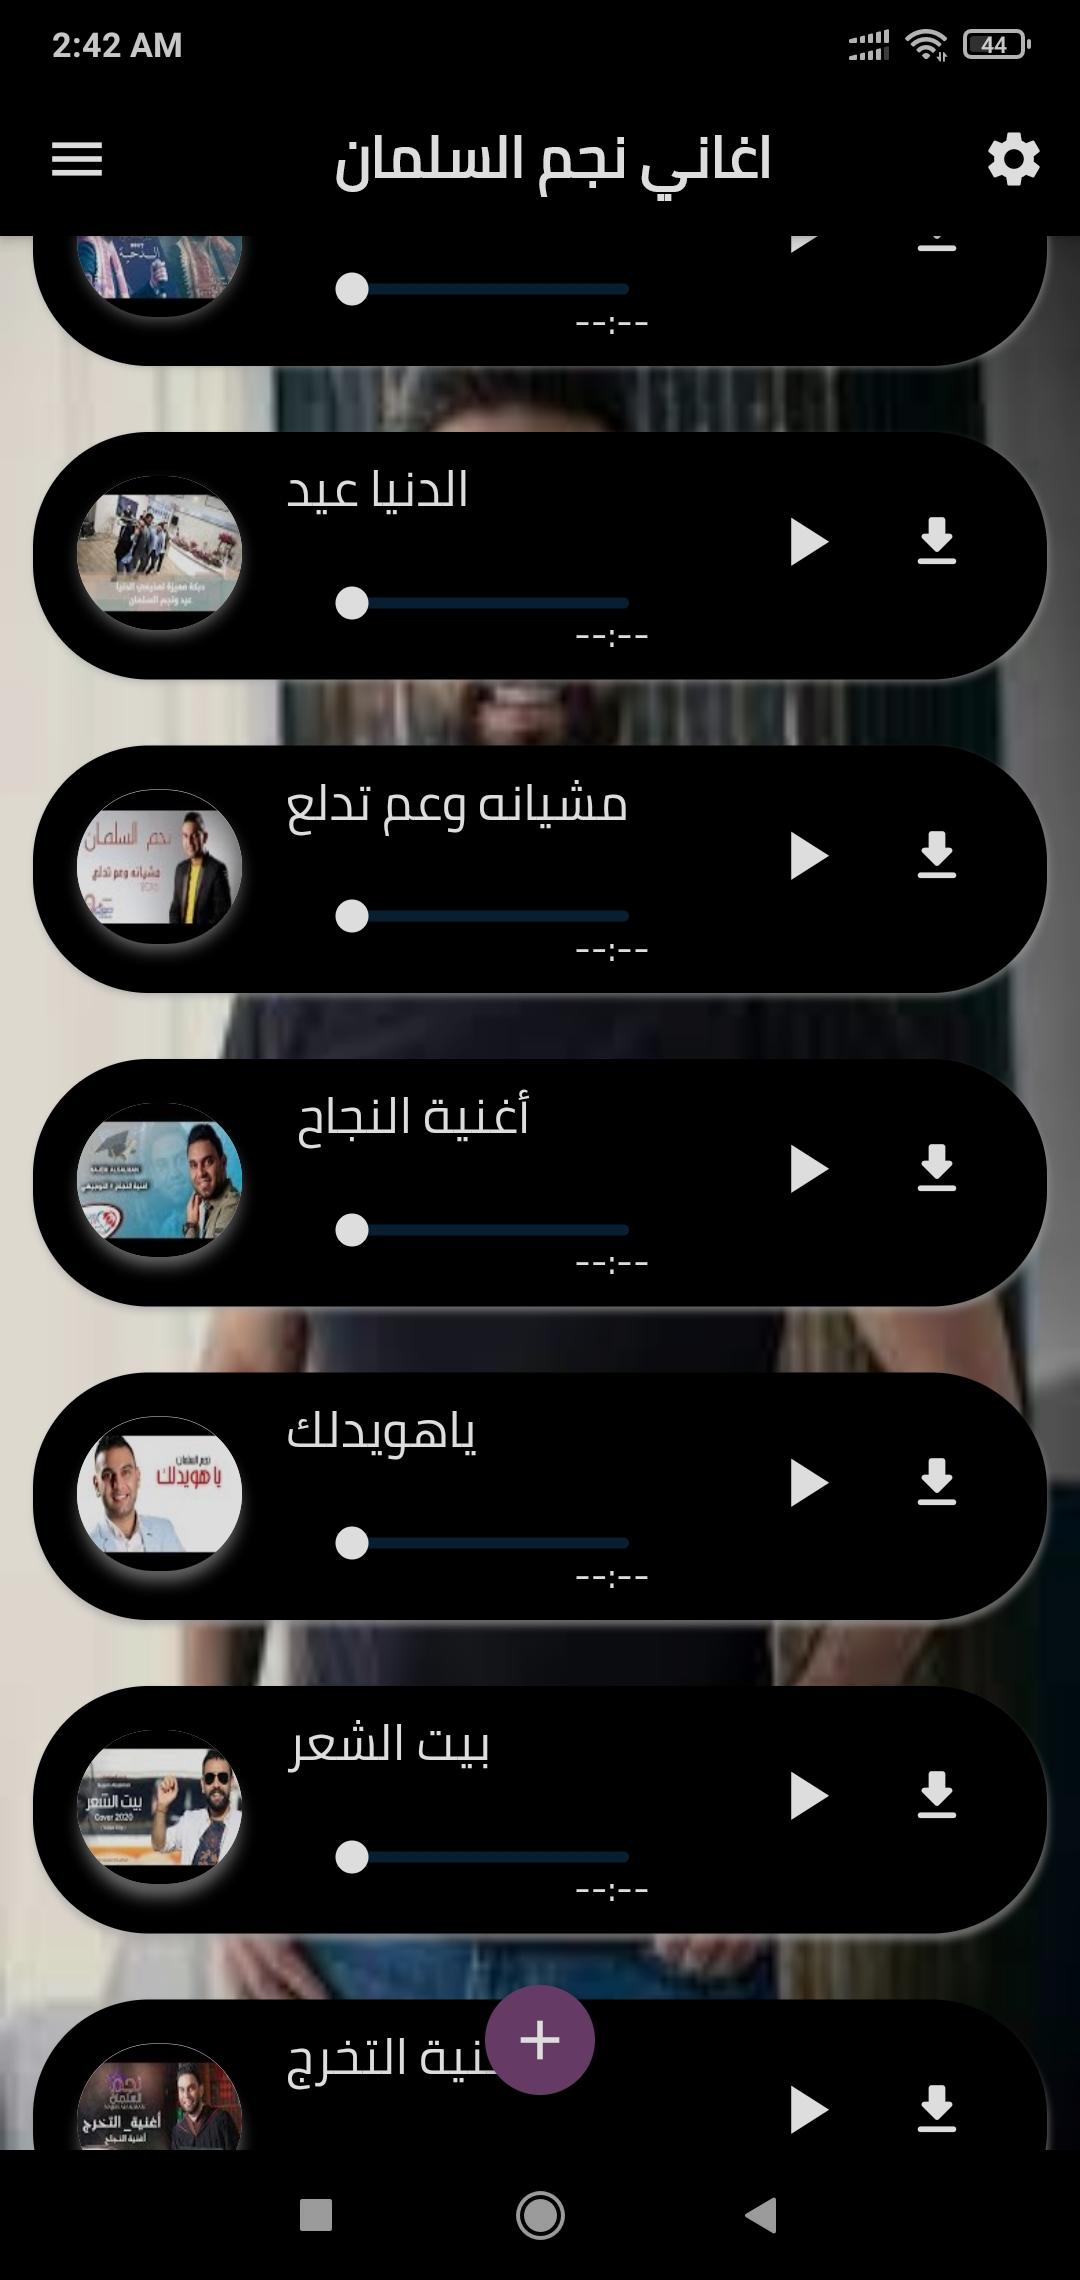 اغاني نجم السلمان صابك غرور APK untuk Unduhan Android